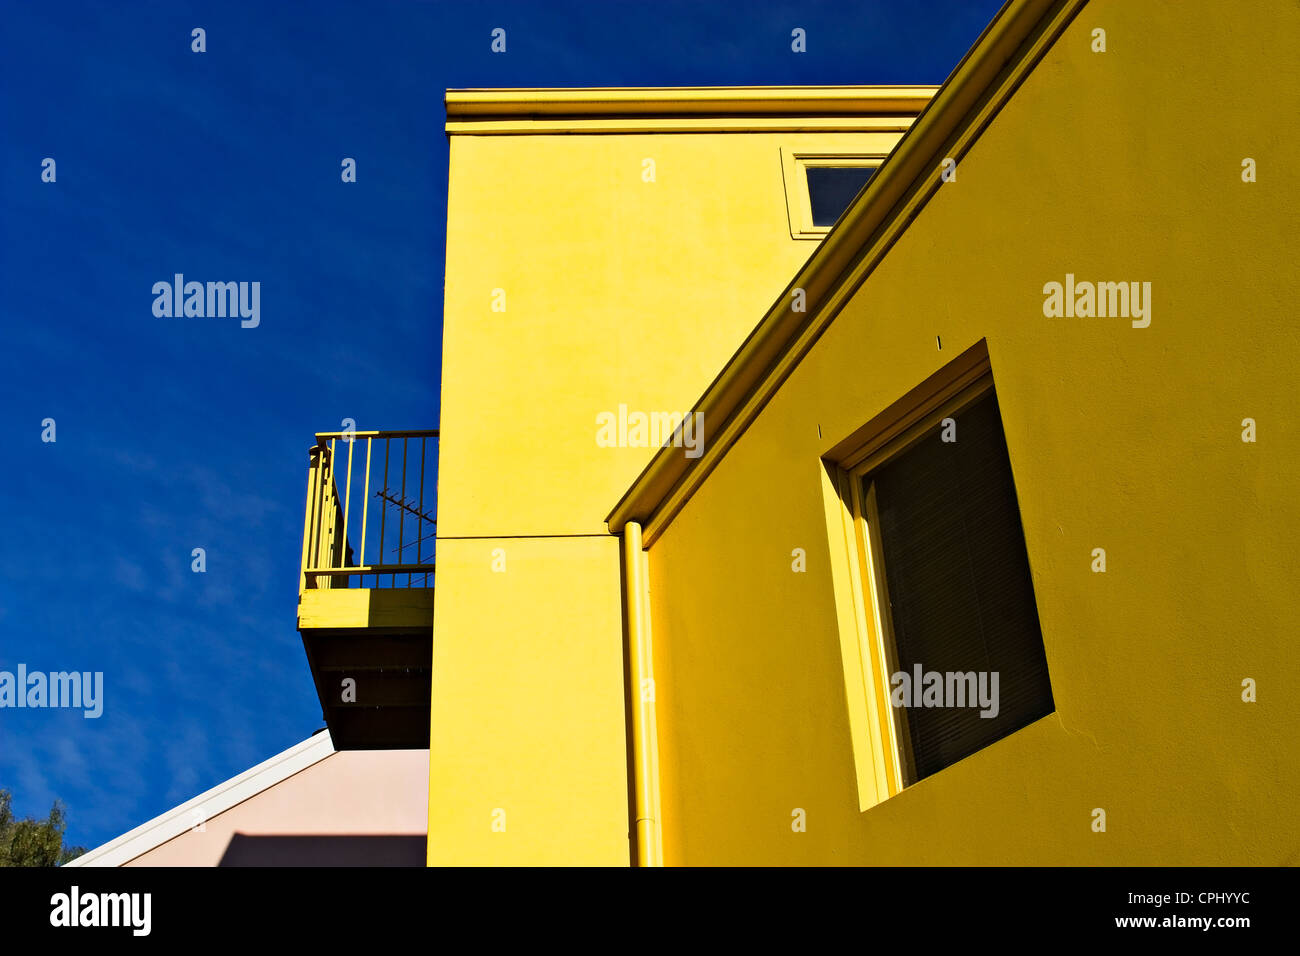 Este contemporáneo de color amarillo brillante Townhouse está situado en el barrio de Melbourne de Flemington. Foto de stock